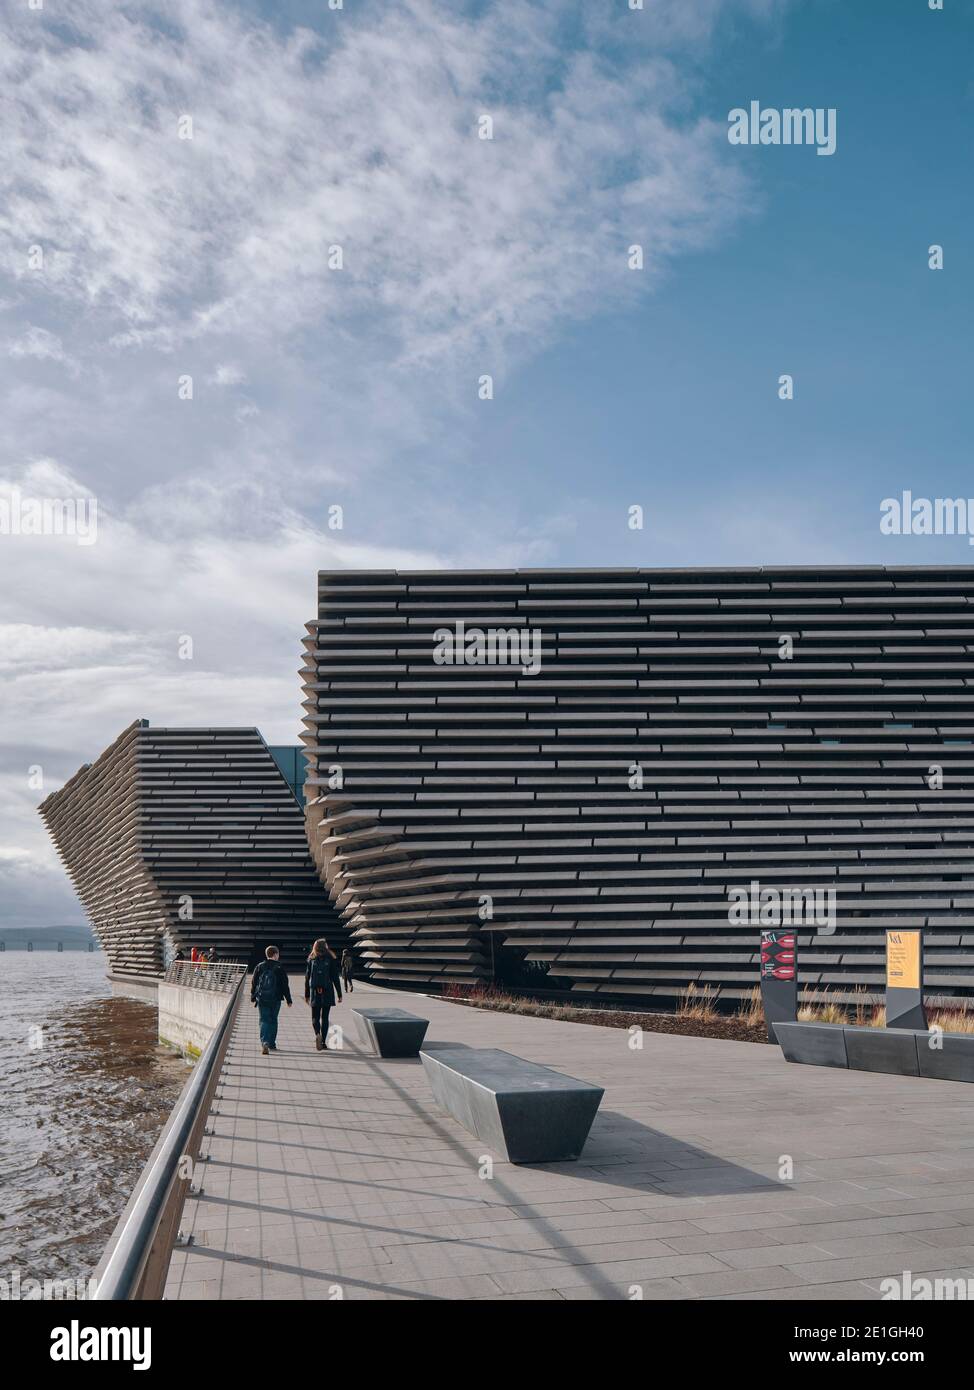 Vista esterna del V&A Dundee dell'architetto giapponese Kengo Kuma, un museo di design sul lungomare di Dundee, Scozia, Regno Unito. Foto Stock